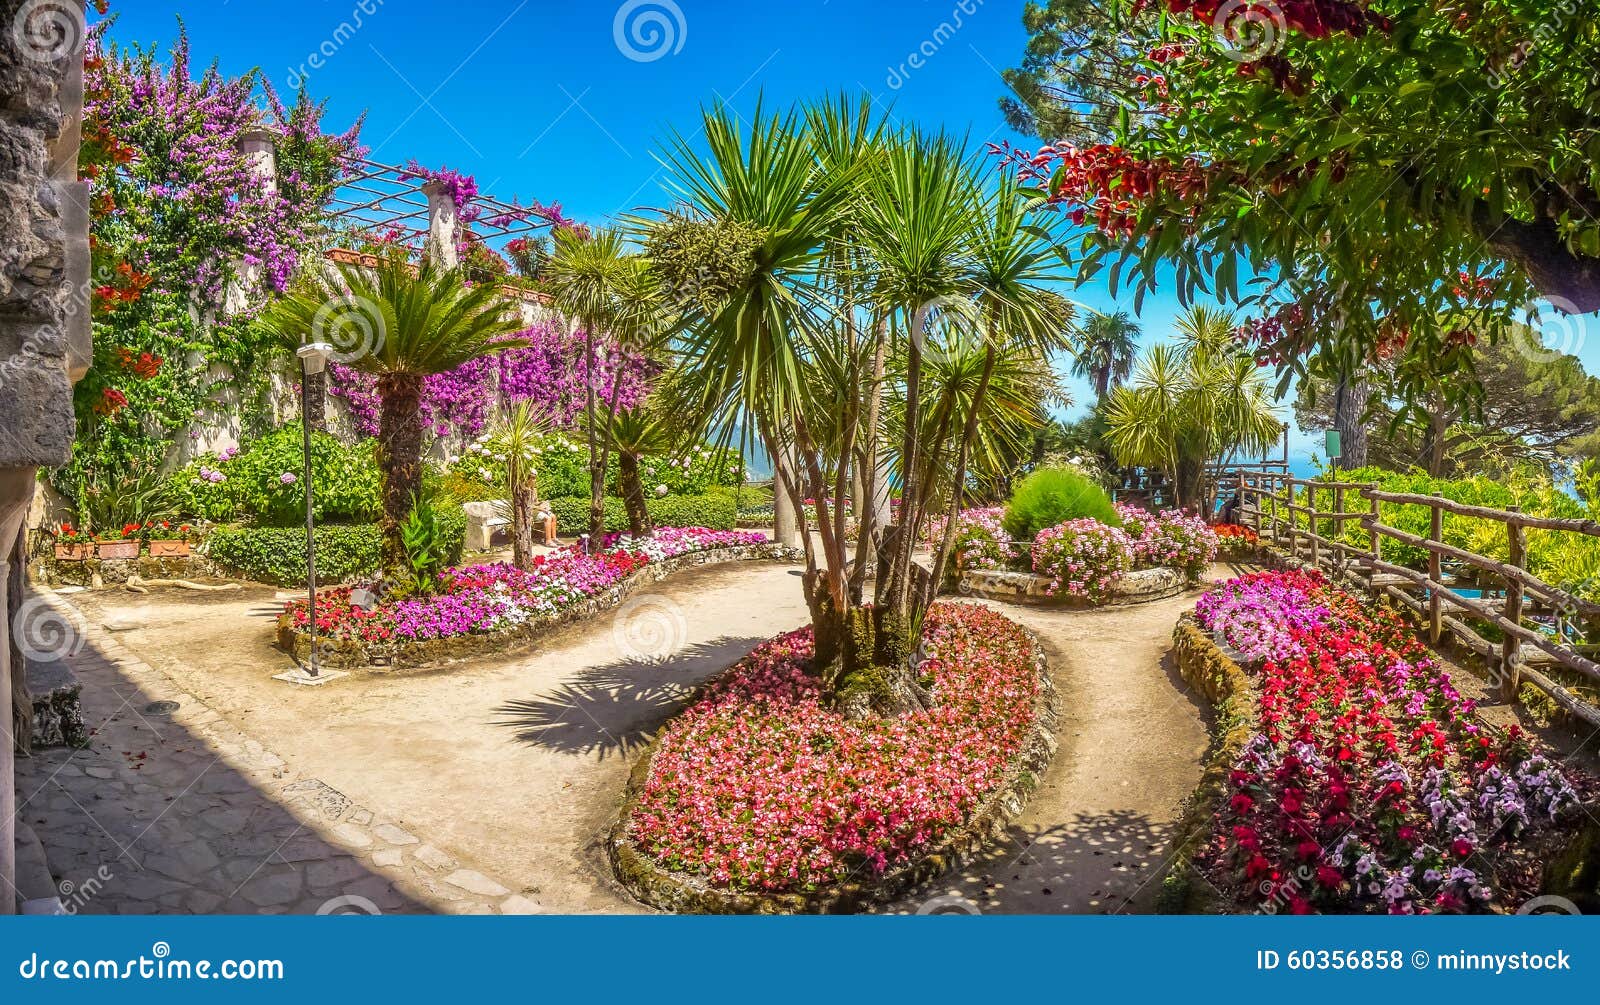 beautiful villa rufolo gardens in ravello at amalfi coast, italy